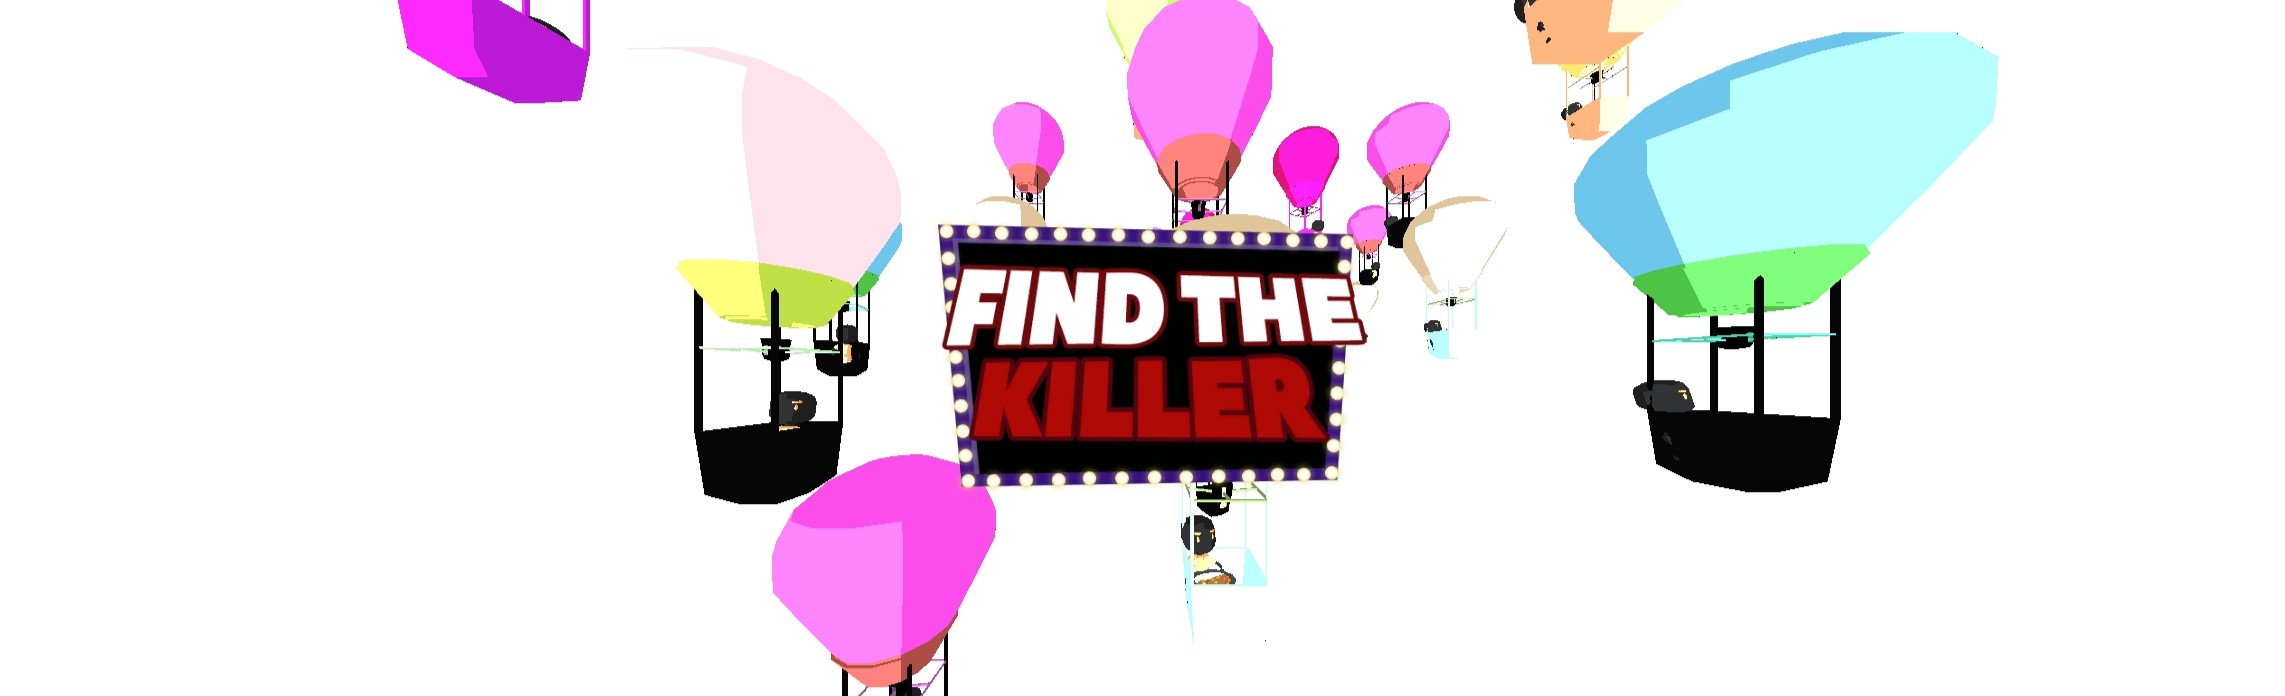 Find The Killer - Demo